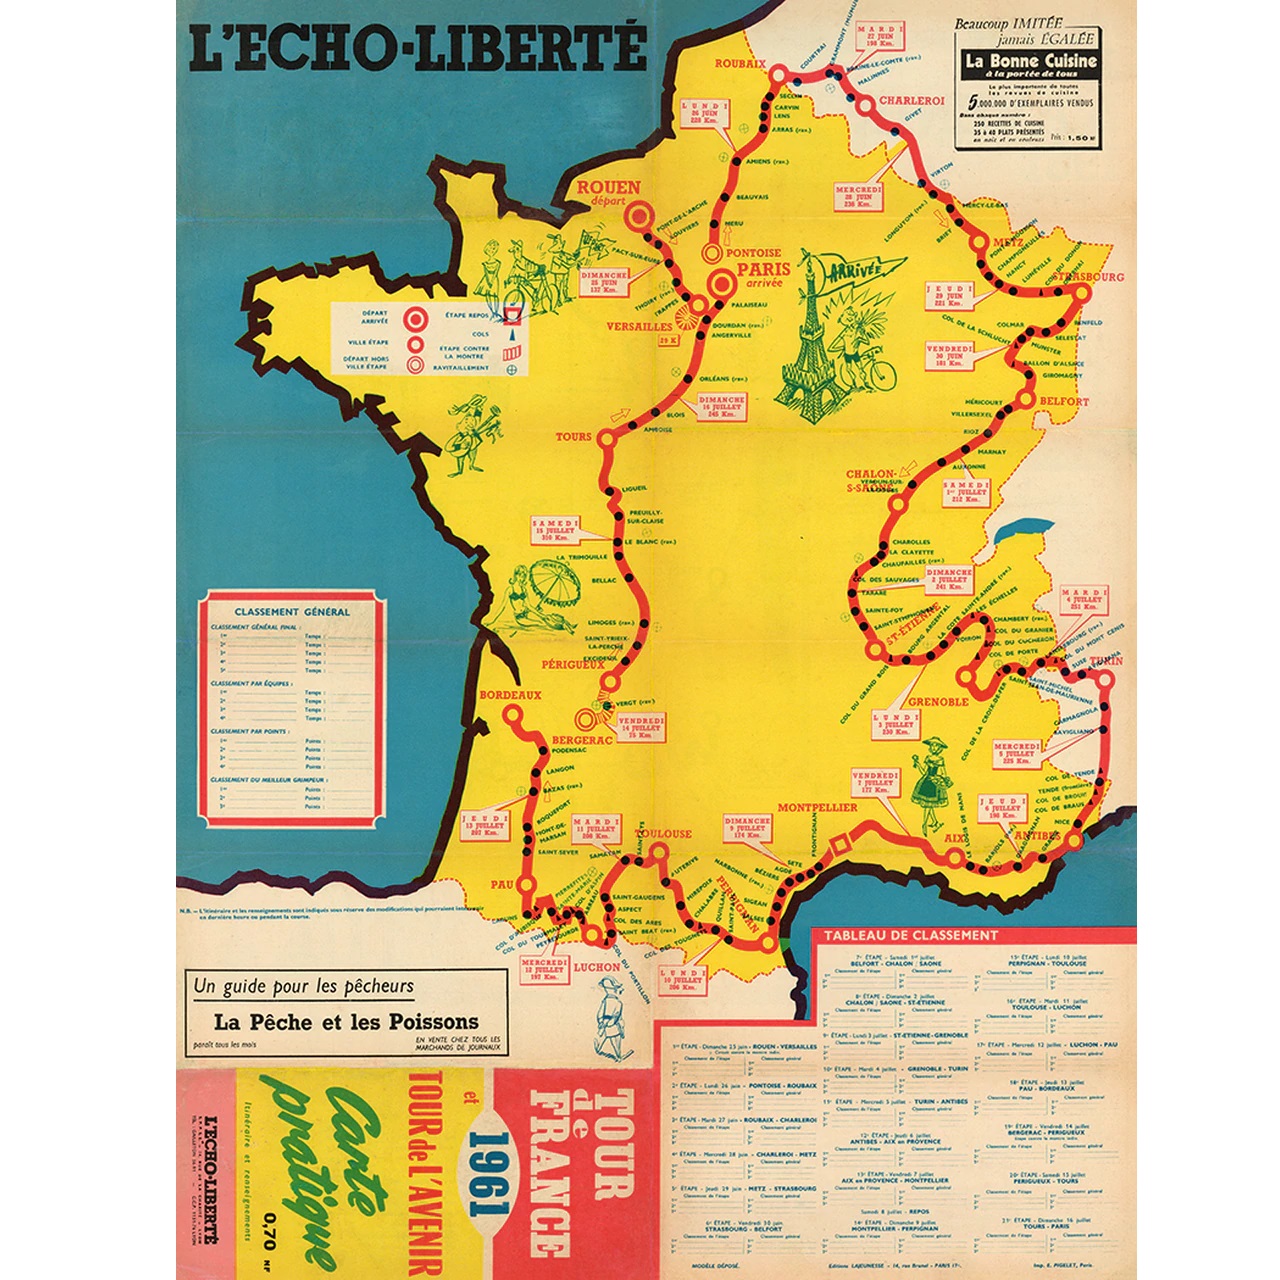 1961 Tour de France (TDF) Route Map Poster 18" x 24"